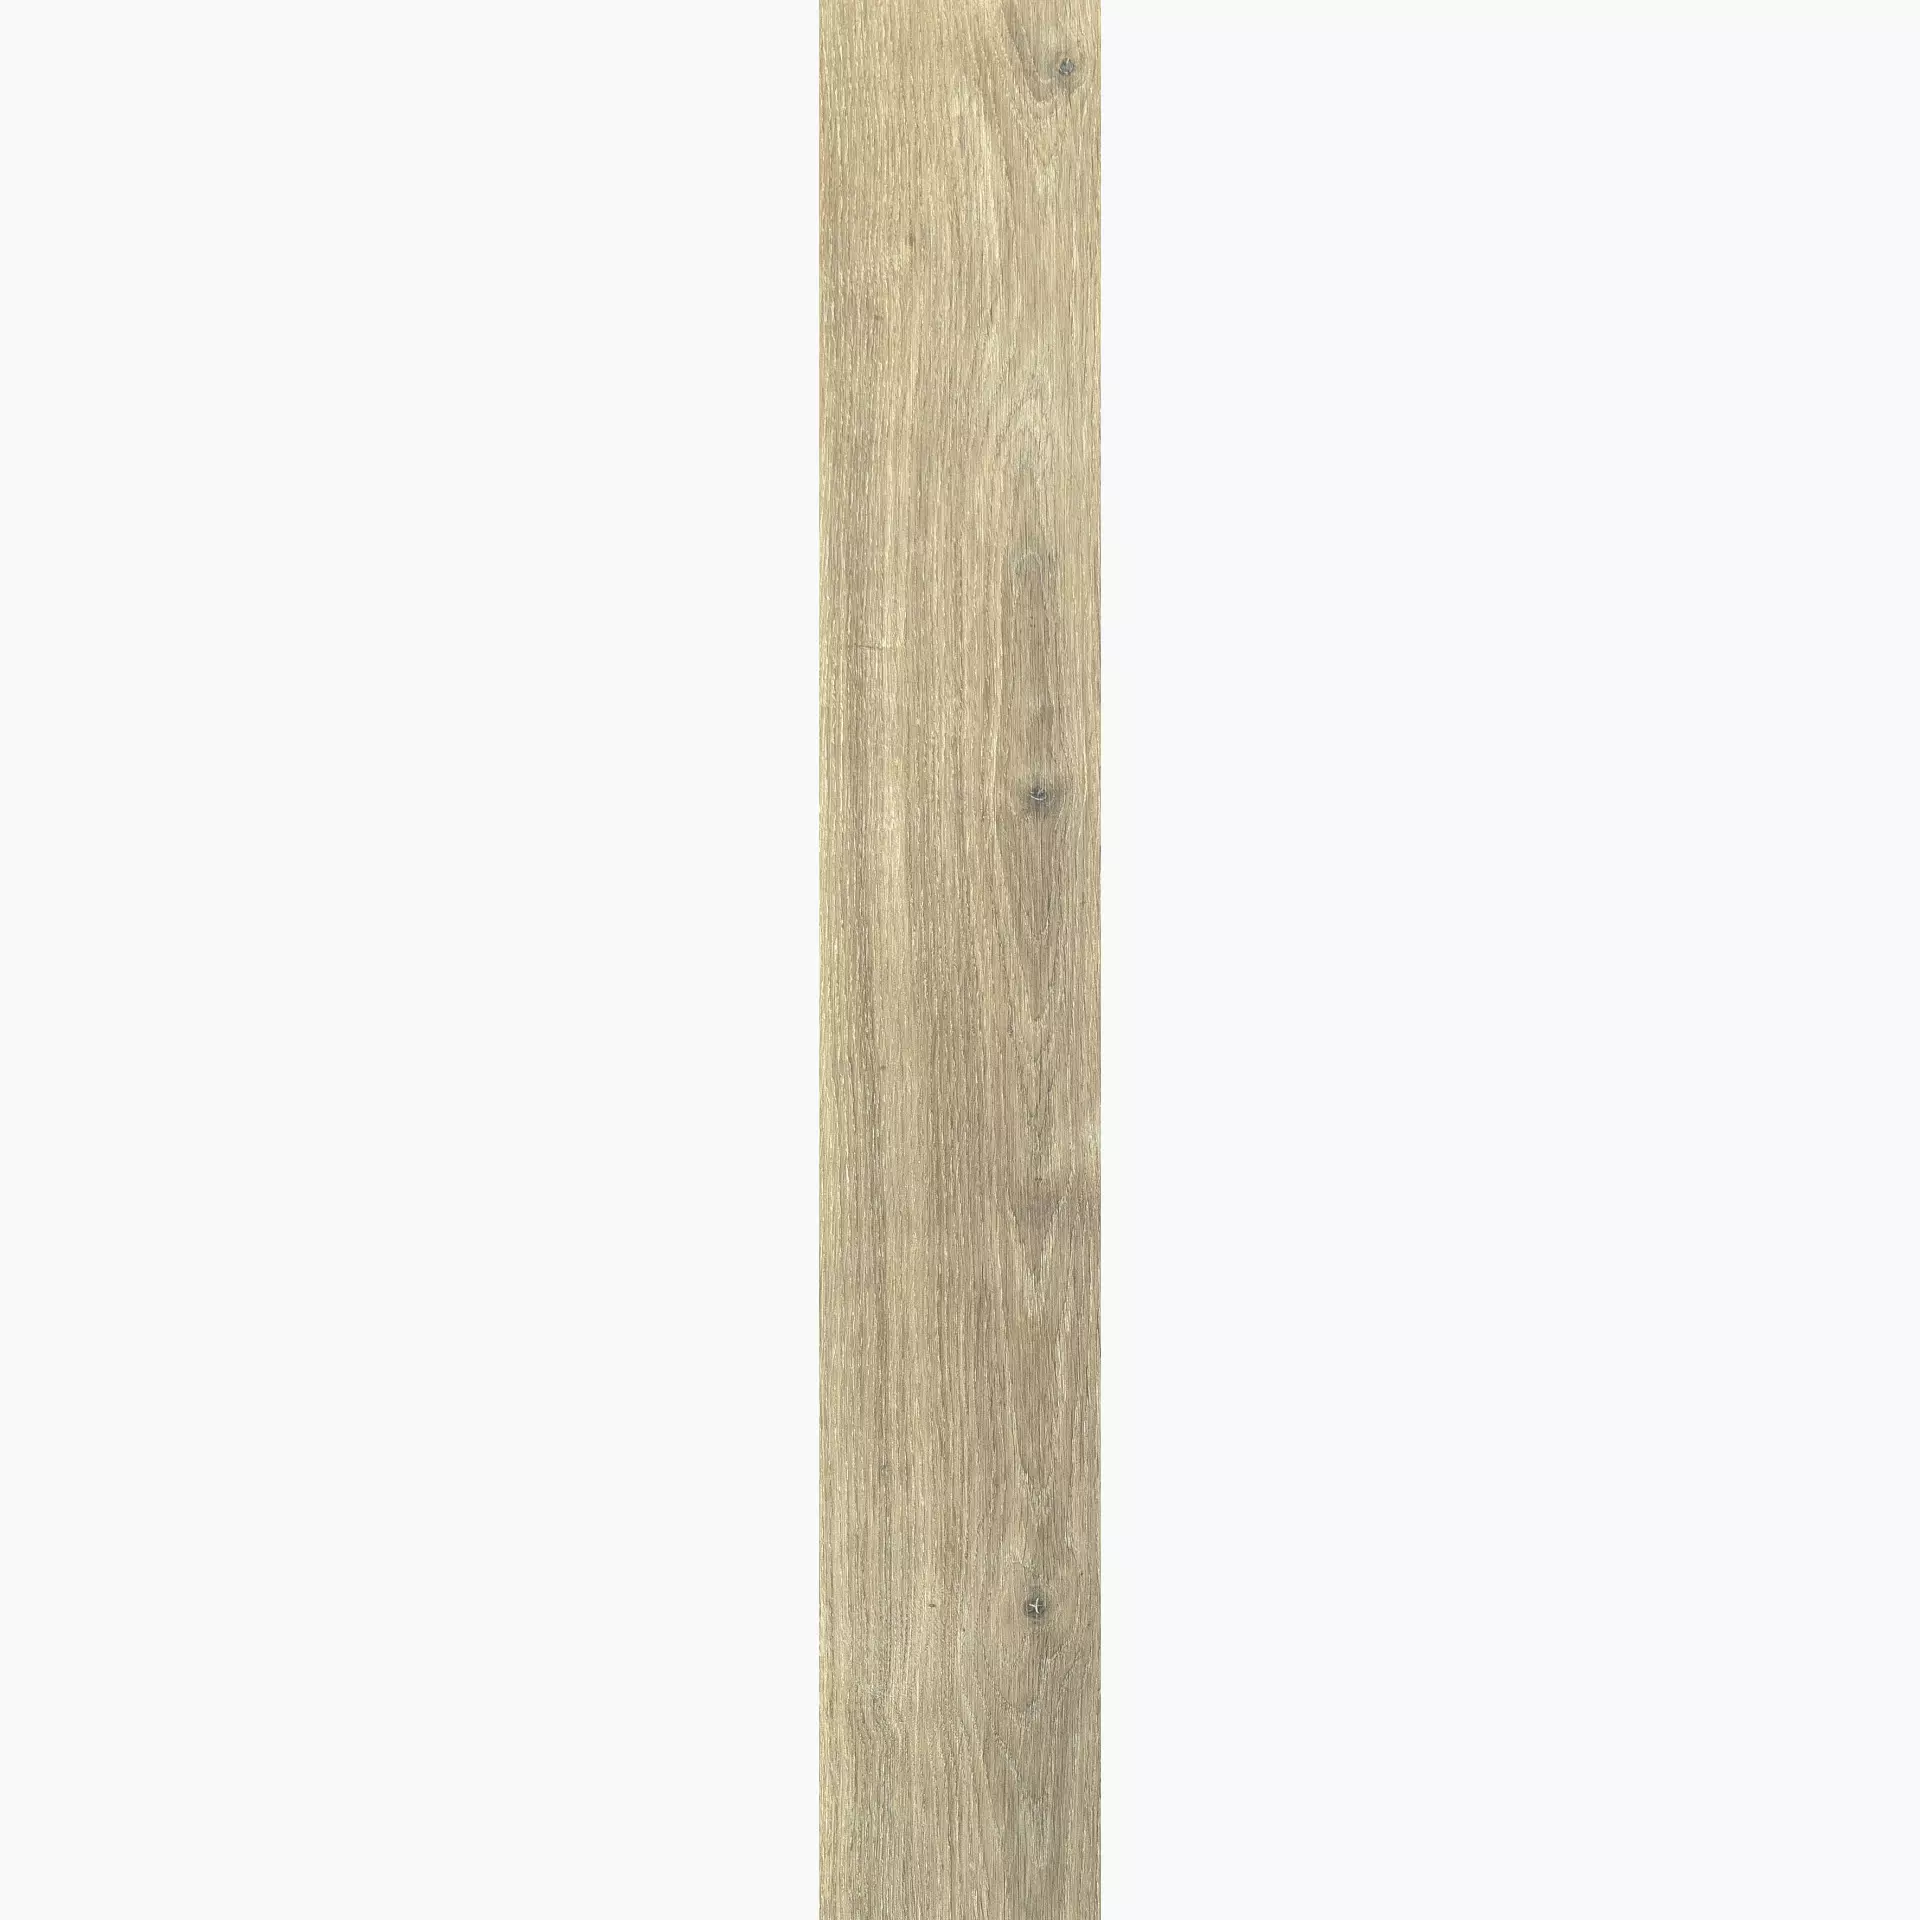 Florim Planches De Rex Miele Naturale – Matt 755694 26,5x180cm rectified 9mm